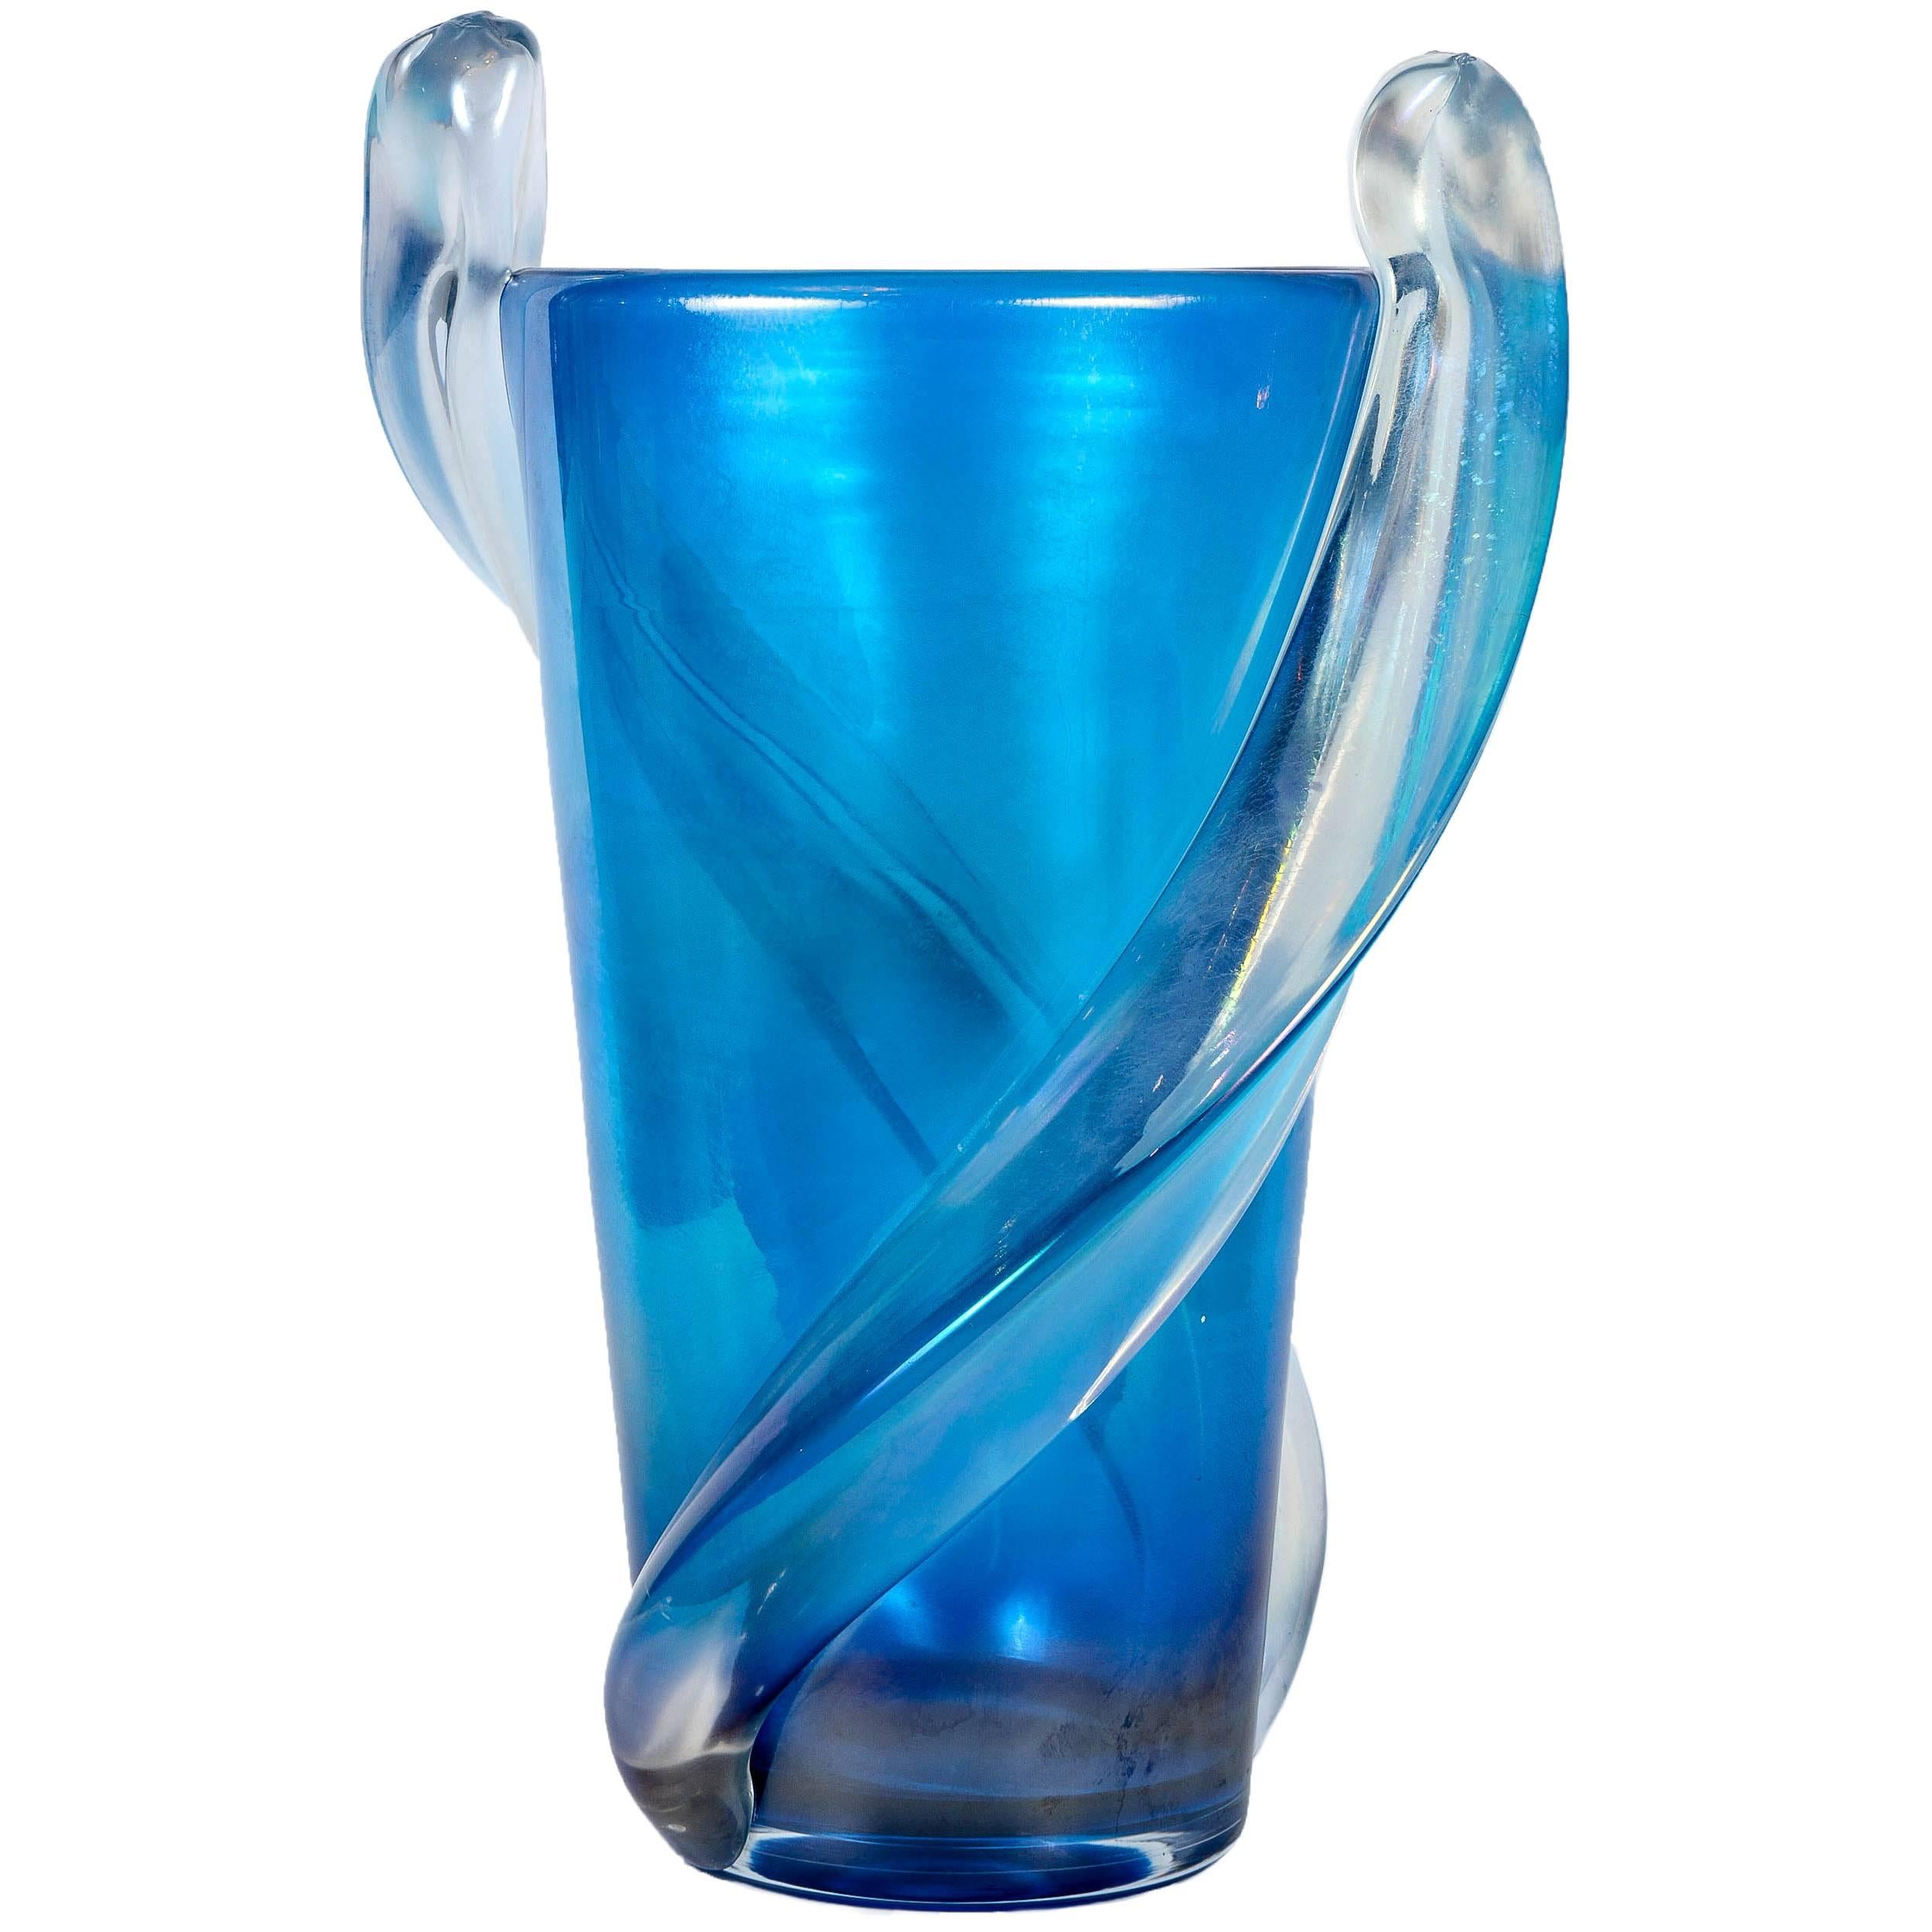 Vase in Murano Glass